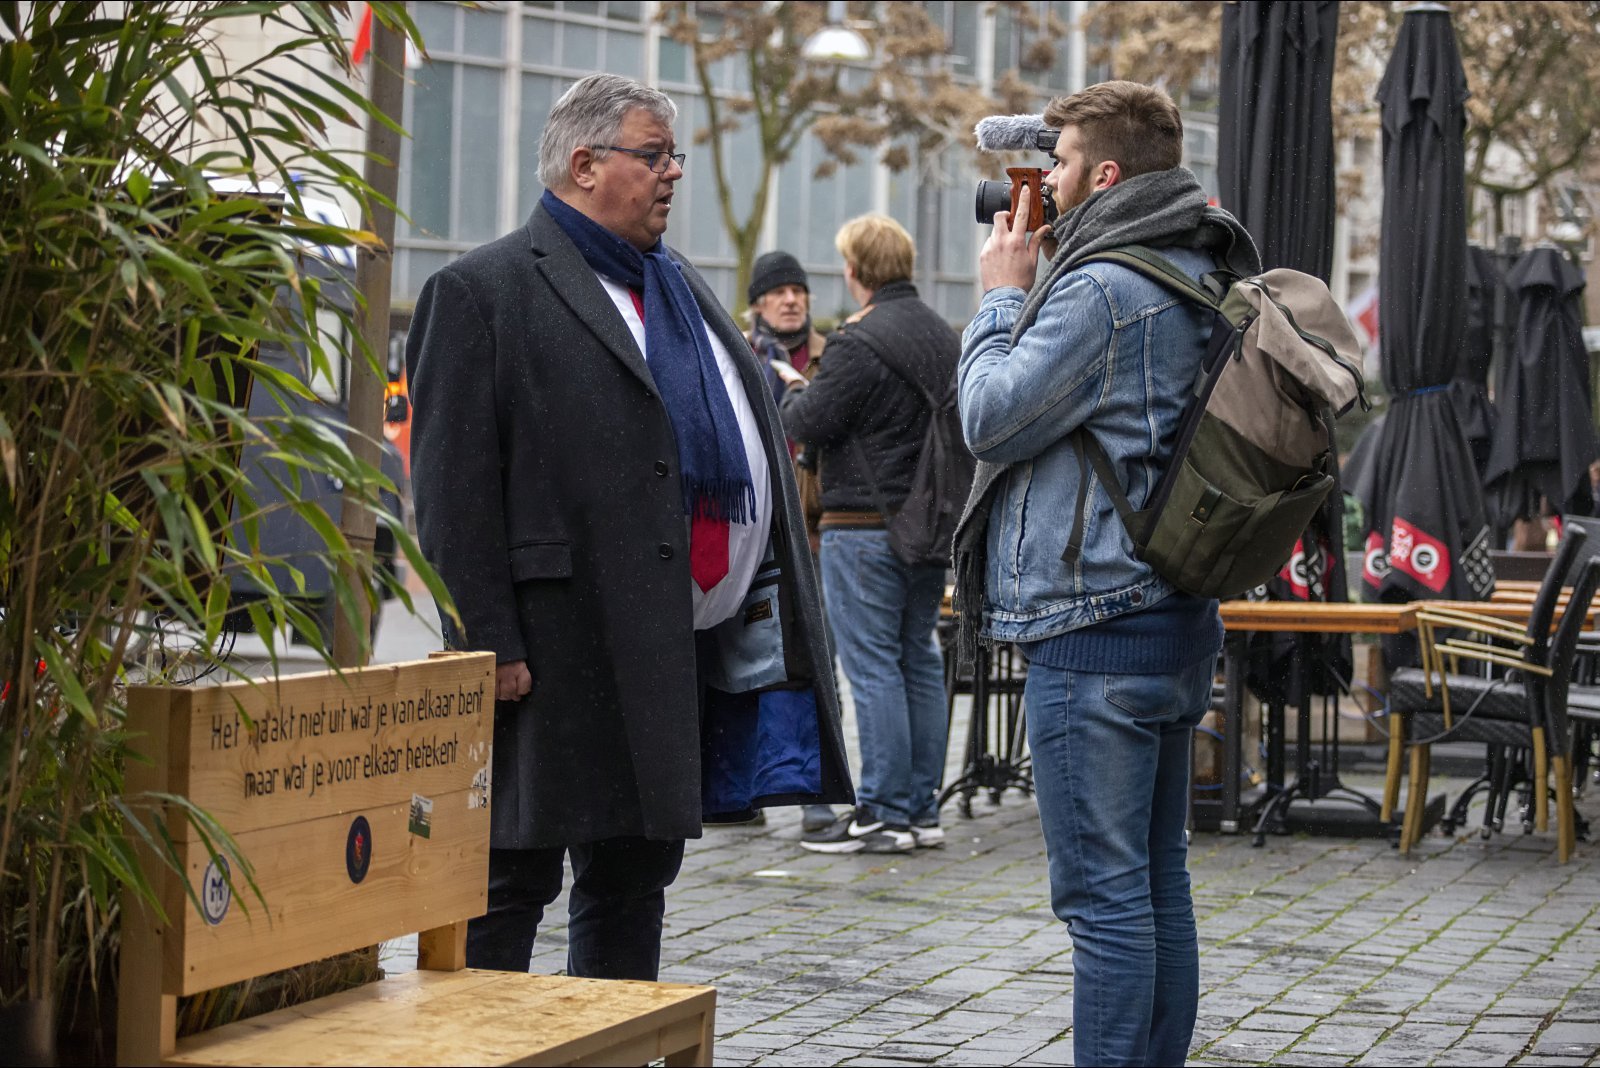 Verboden demonstratie in Nijmegen